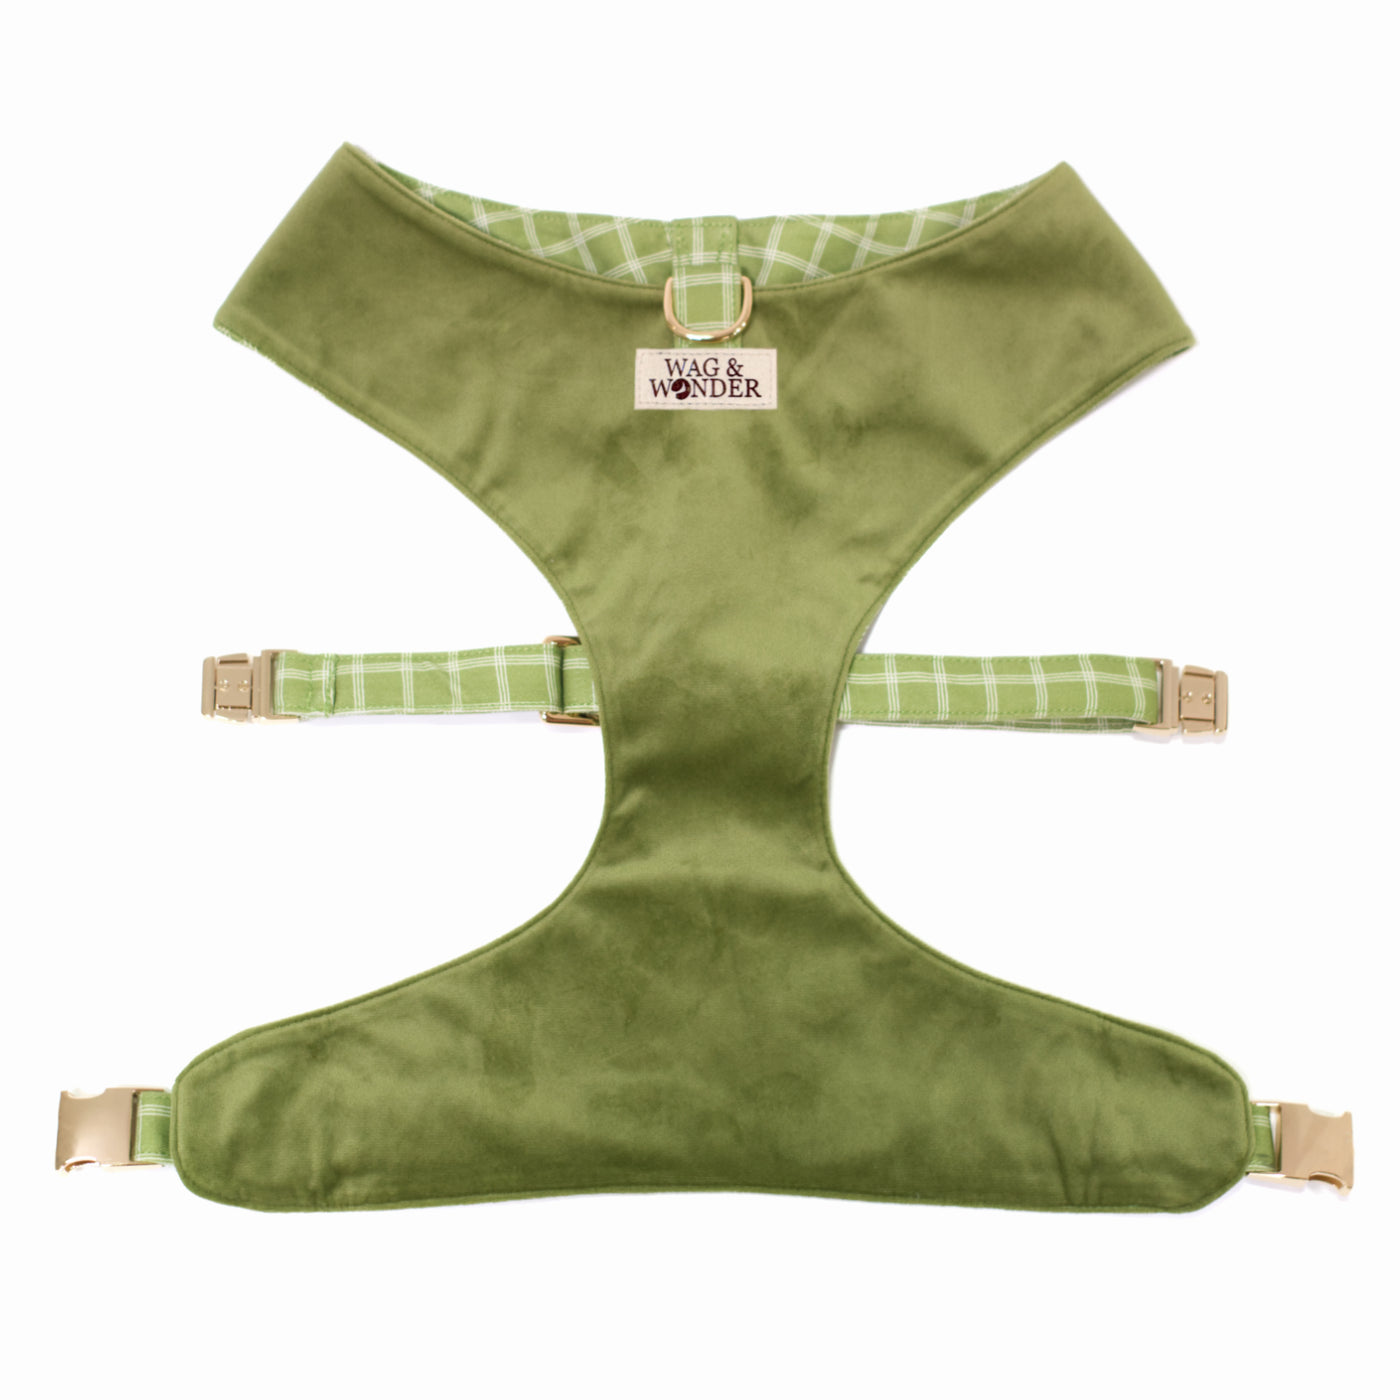 Moss green velvet reversible dog harness with gold hardware